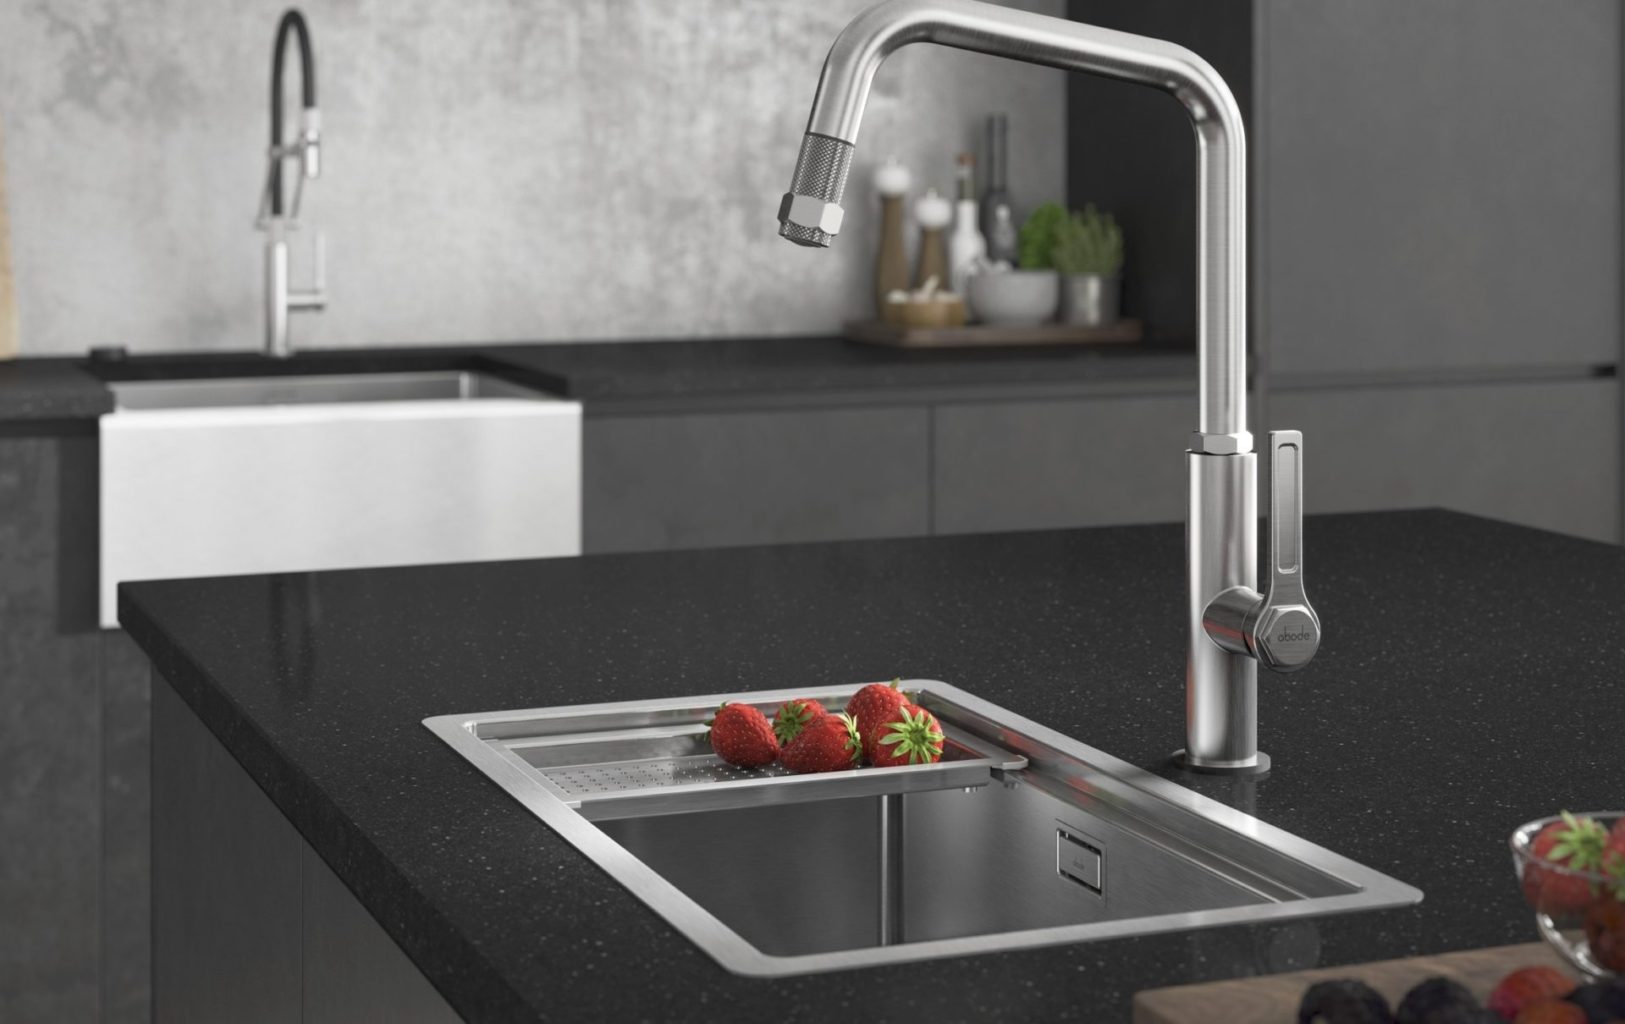 Kitchen sink design ideas